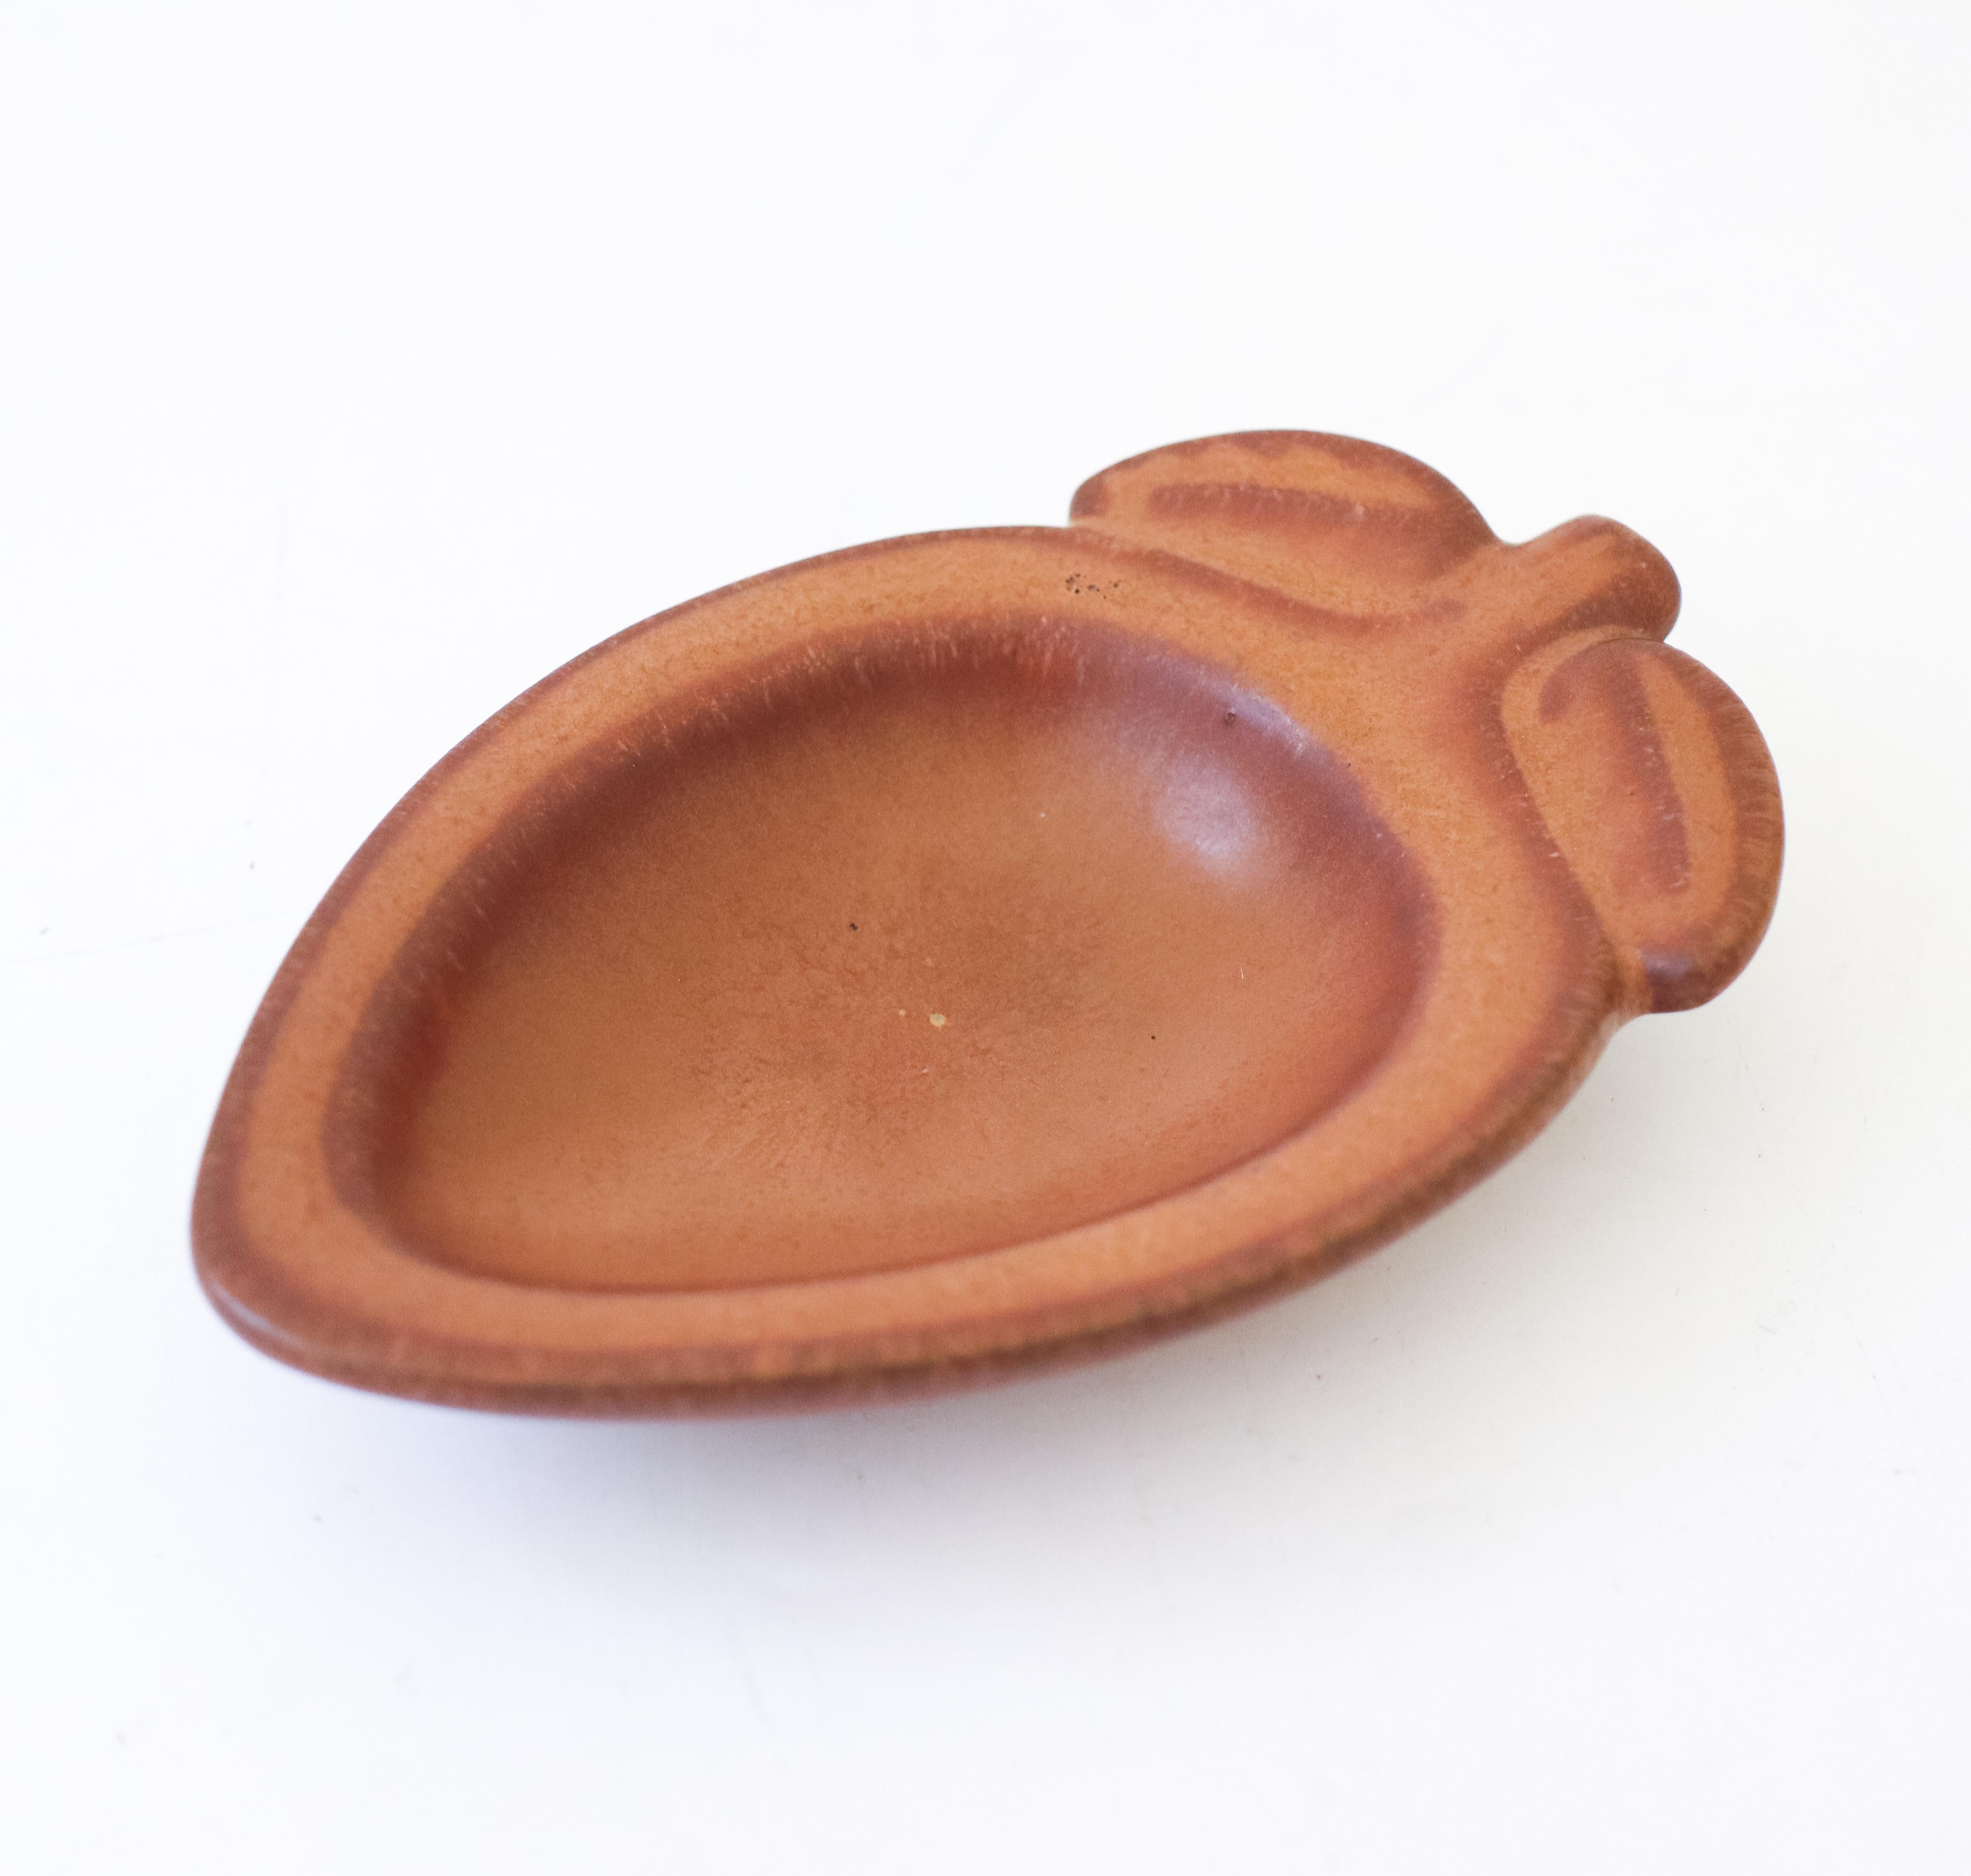 Un bol brun en forme de gland conçu par Gunnar Nylund chez Rörstrand, il mesure 13,5 x 8,5 cm de diamètre. Il est en très bon état, à l'exception de quelques petites marques. Il est marqué comme étant de 2ème qualité. 

Gunnar Nylund est né à Paris